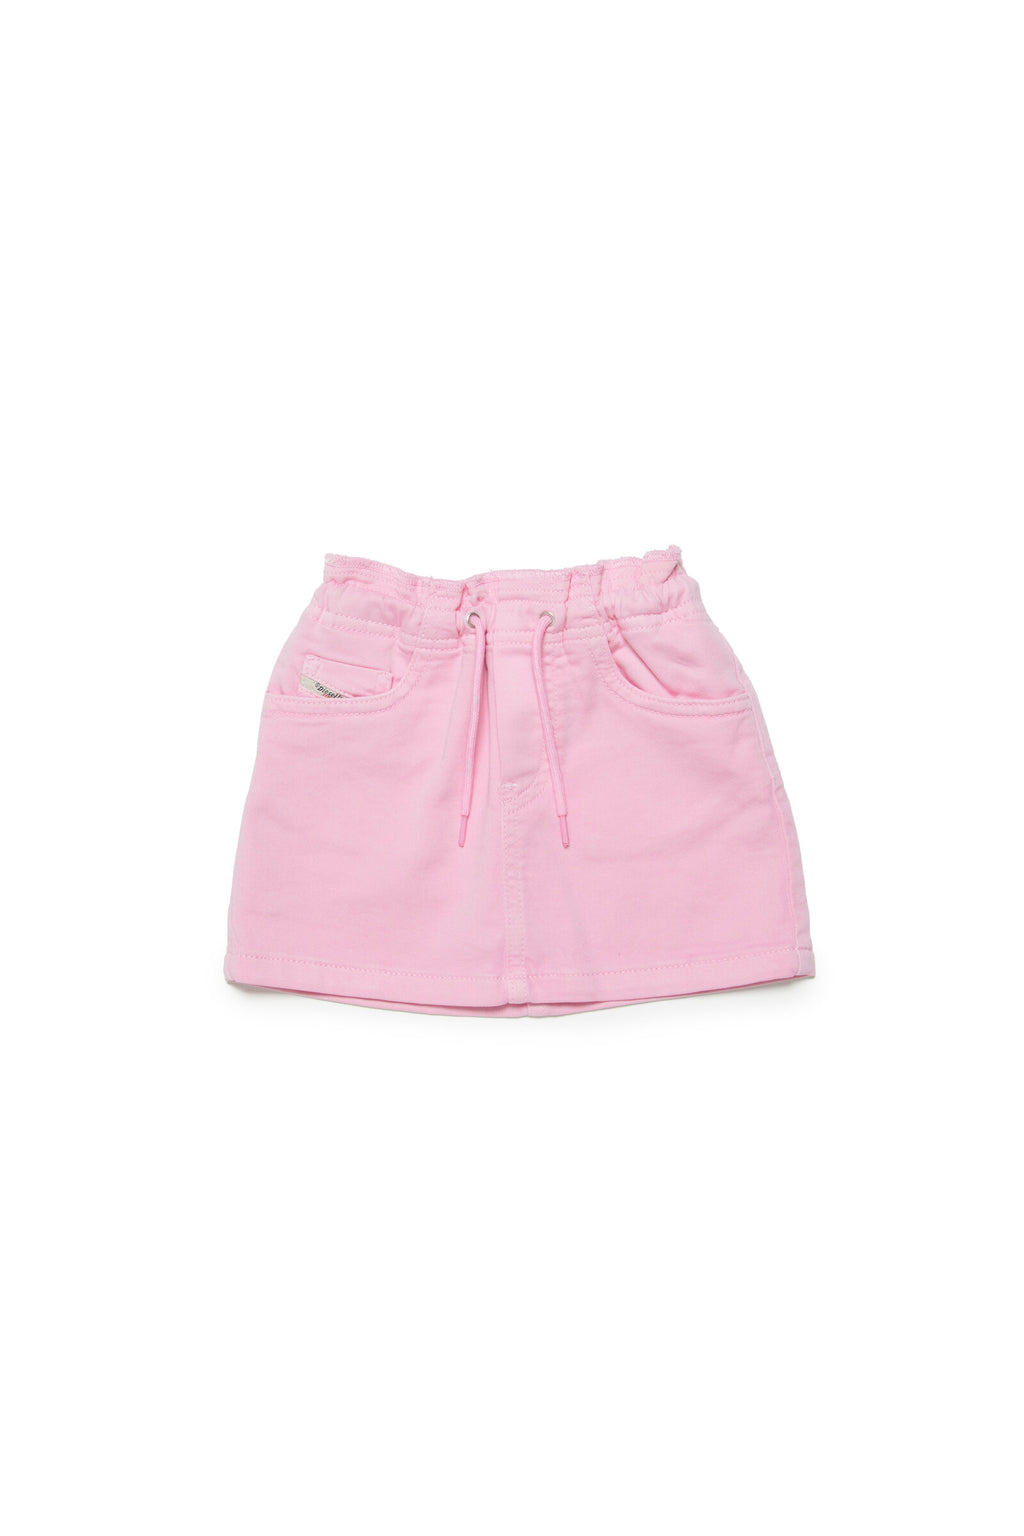 Pastel pink denin skirt with drawstrings